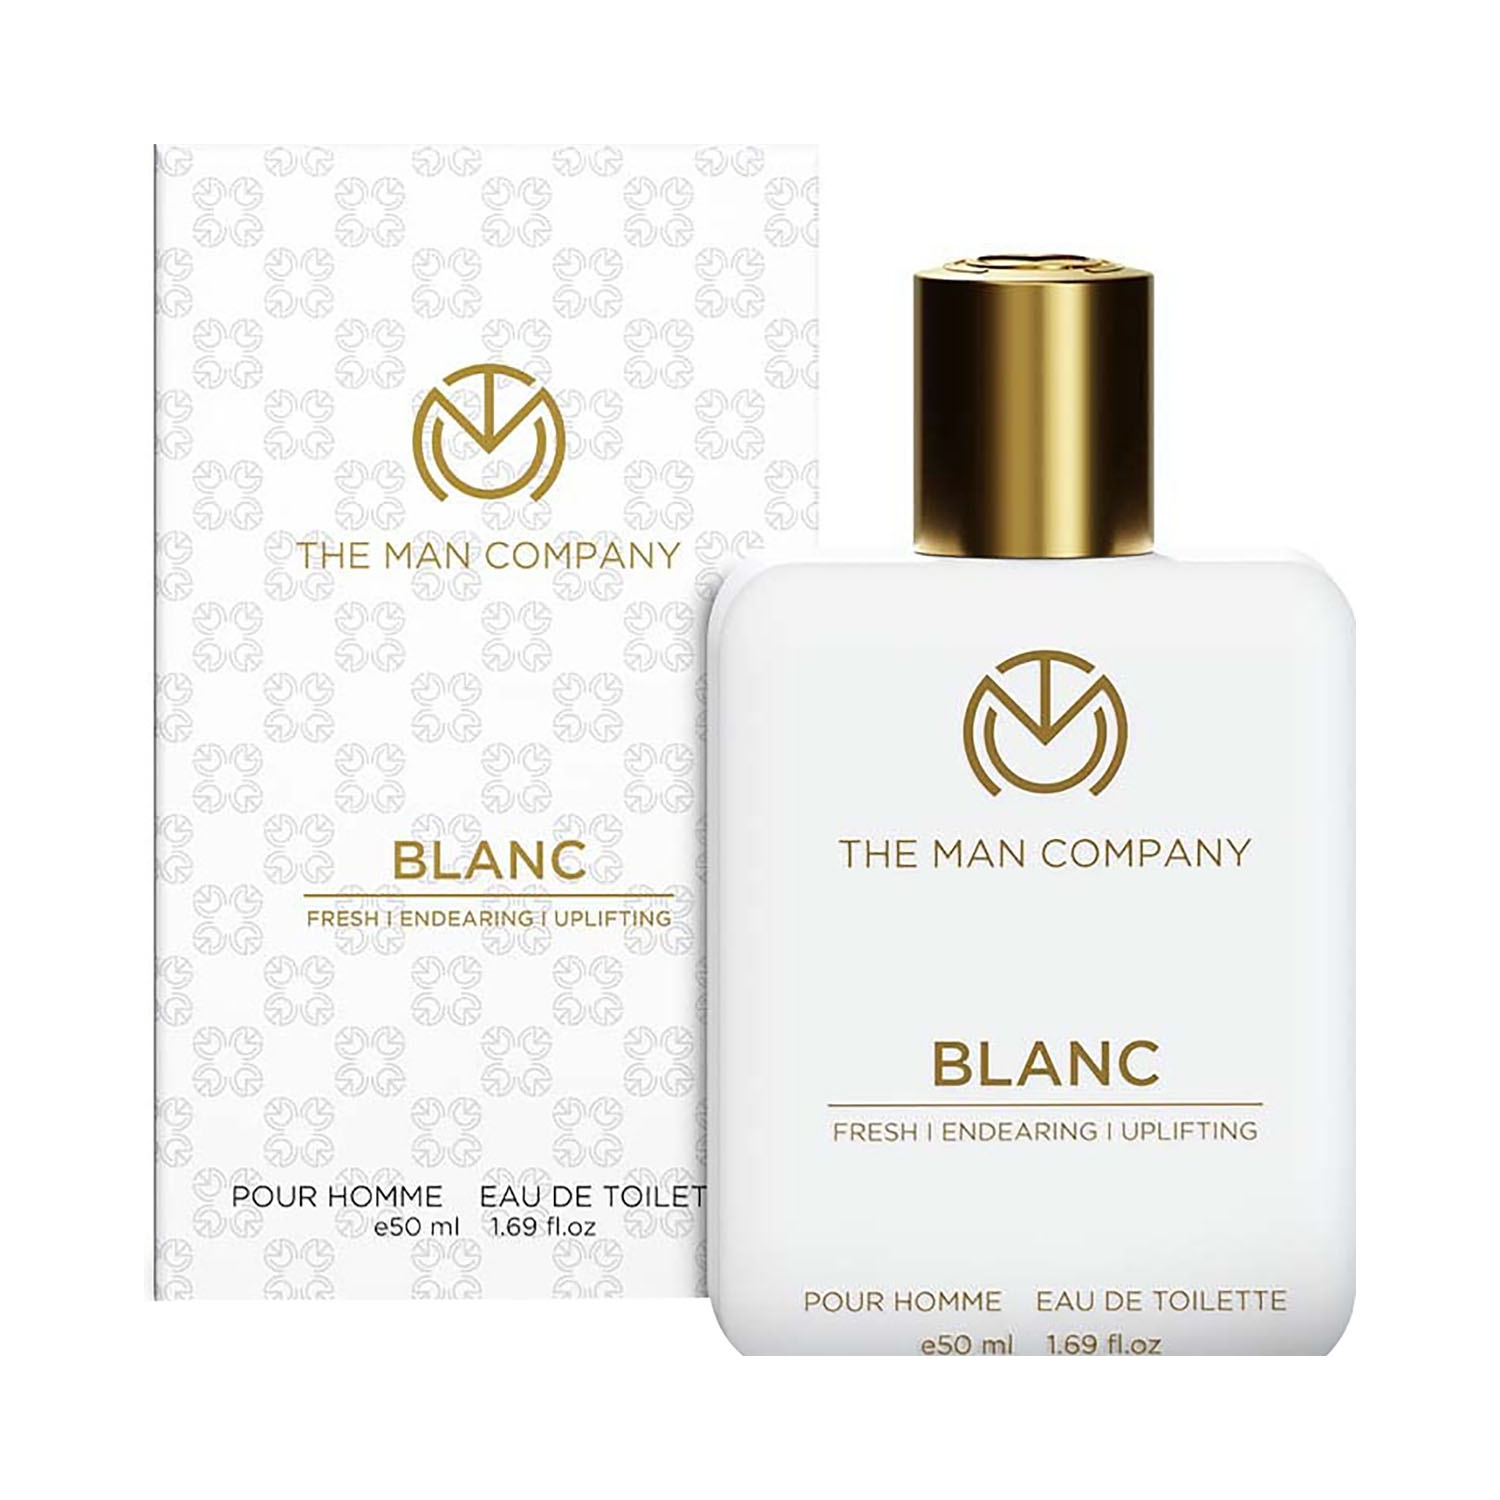 The Man Company Blanc Eau De Toilette (50ml)